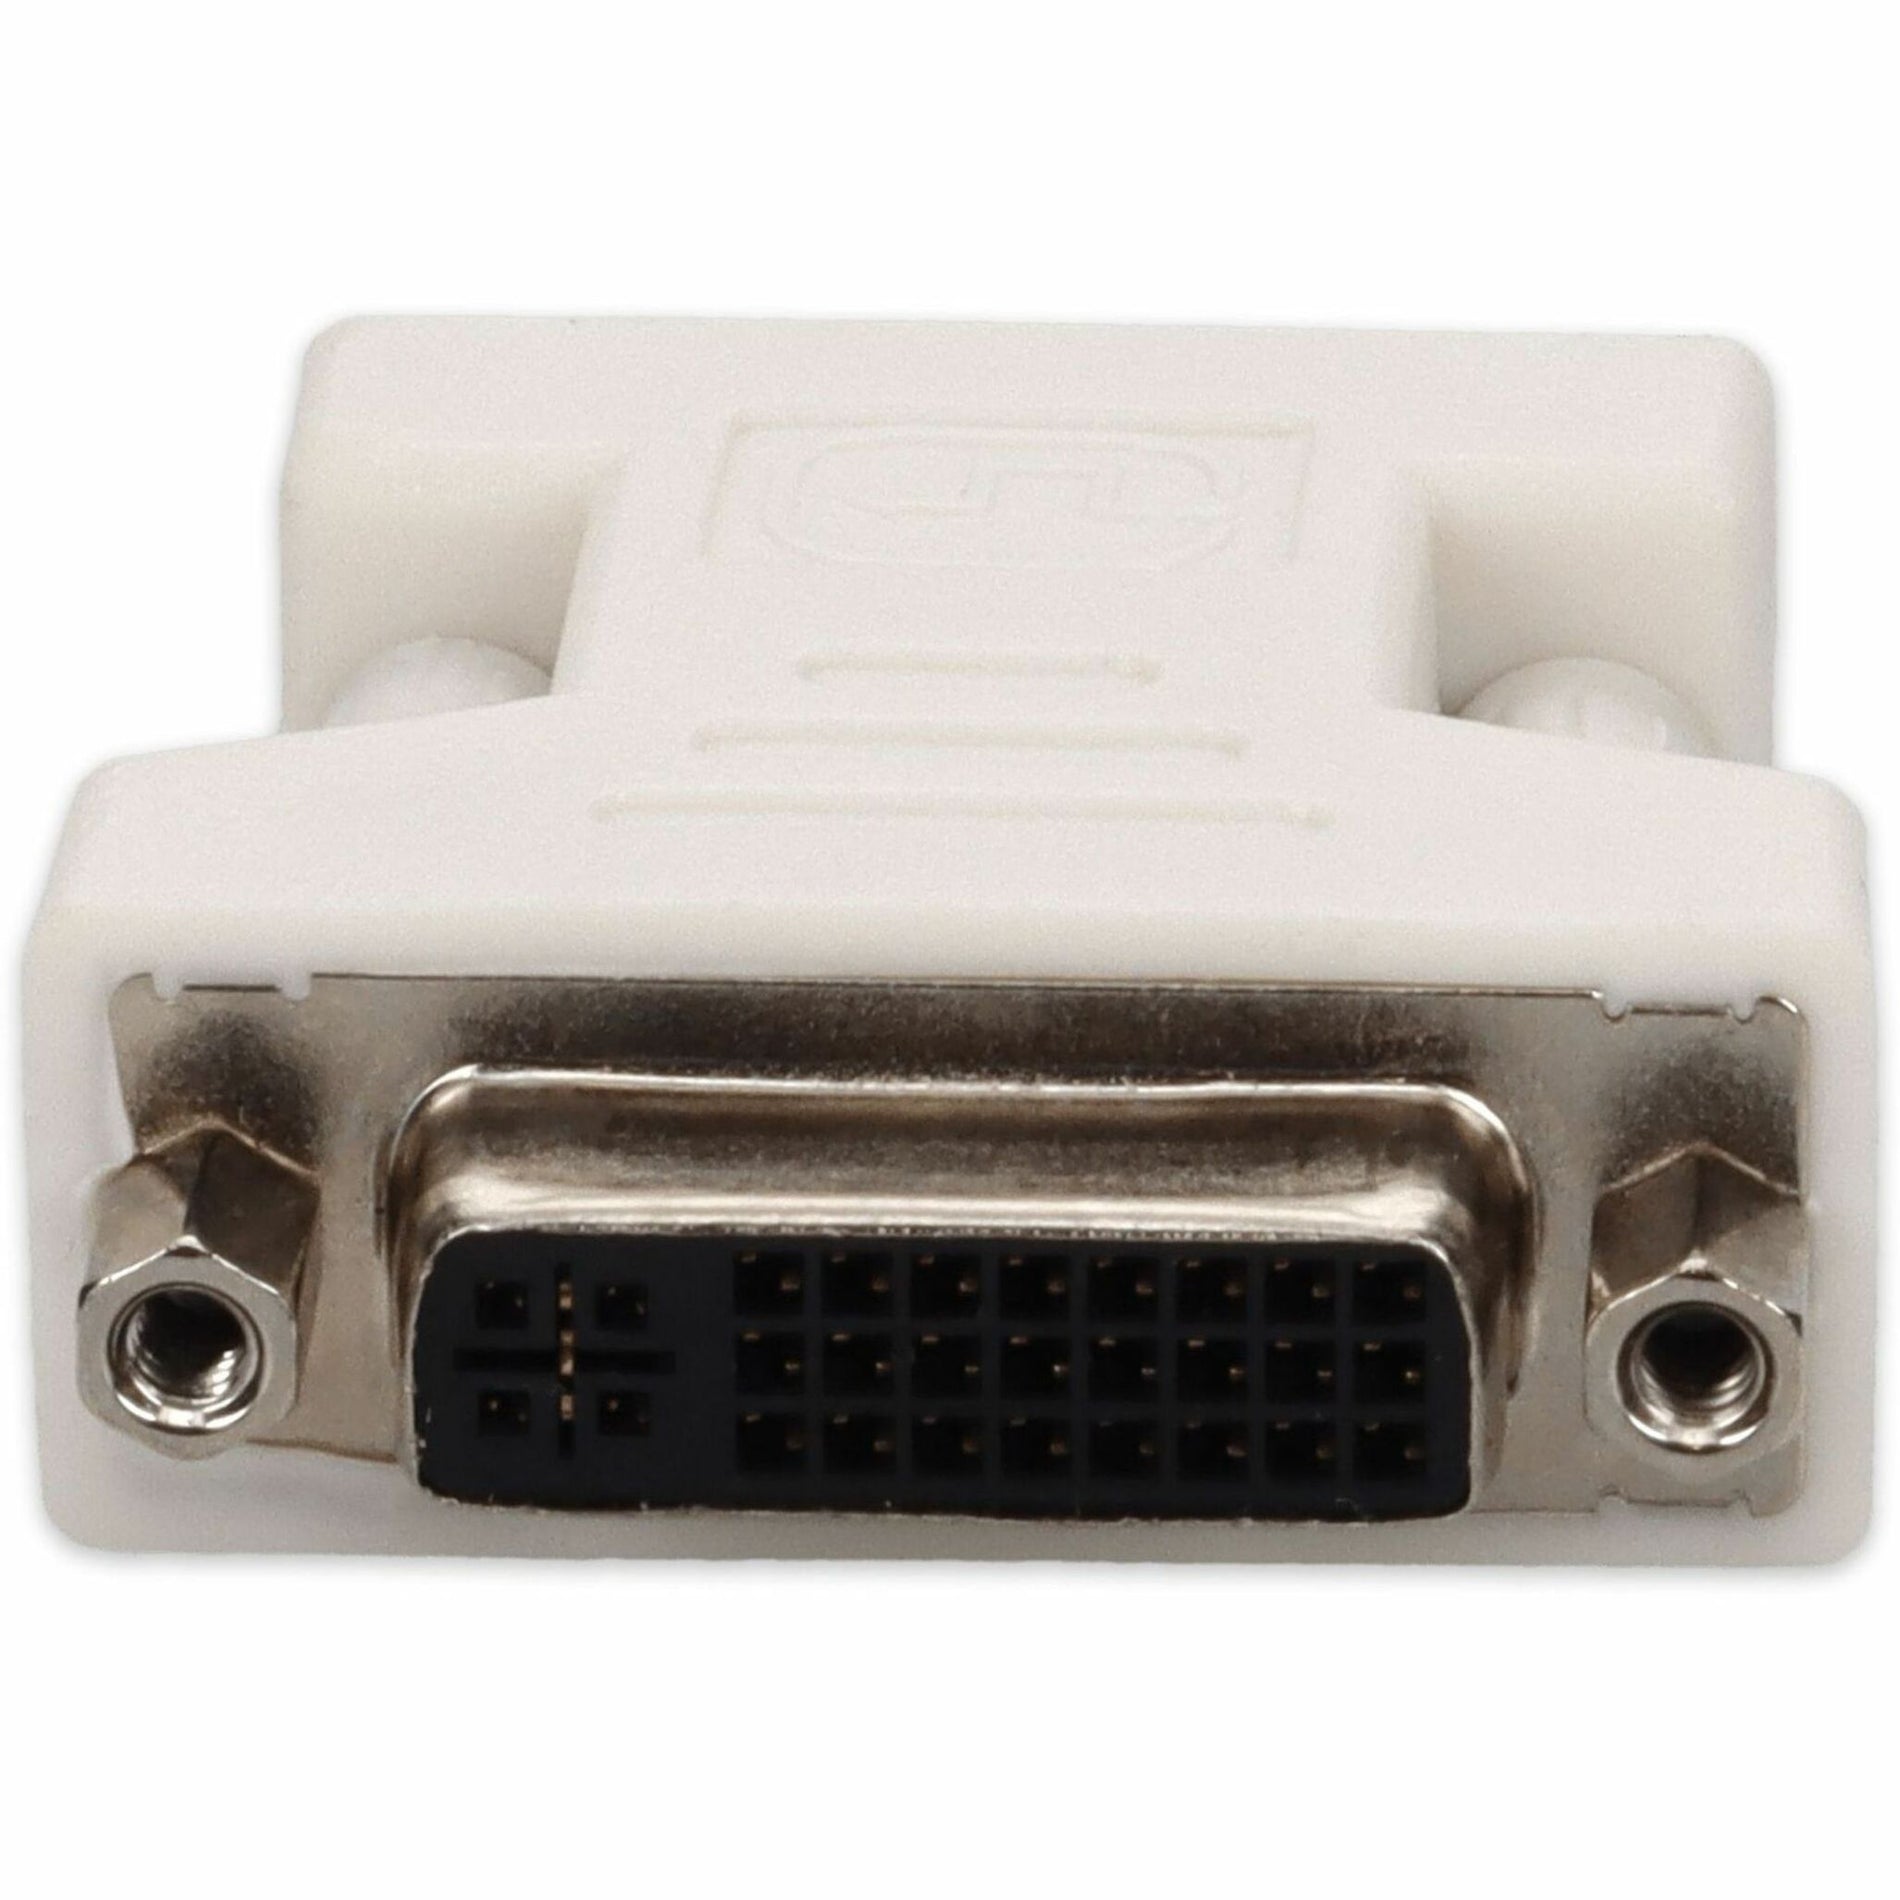 محول فيديو VGA/DVI VGA2DVIW، أبيض، متوافق مع DVI-D أنثى/ذكر العلامة التجارية: AddOn